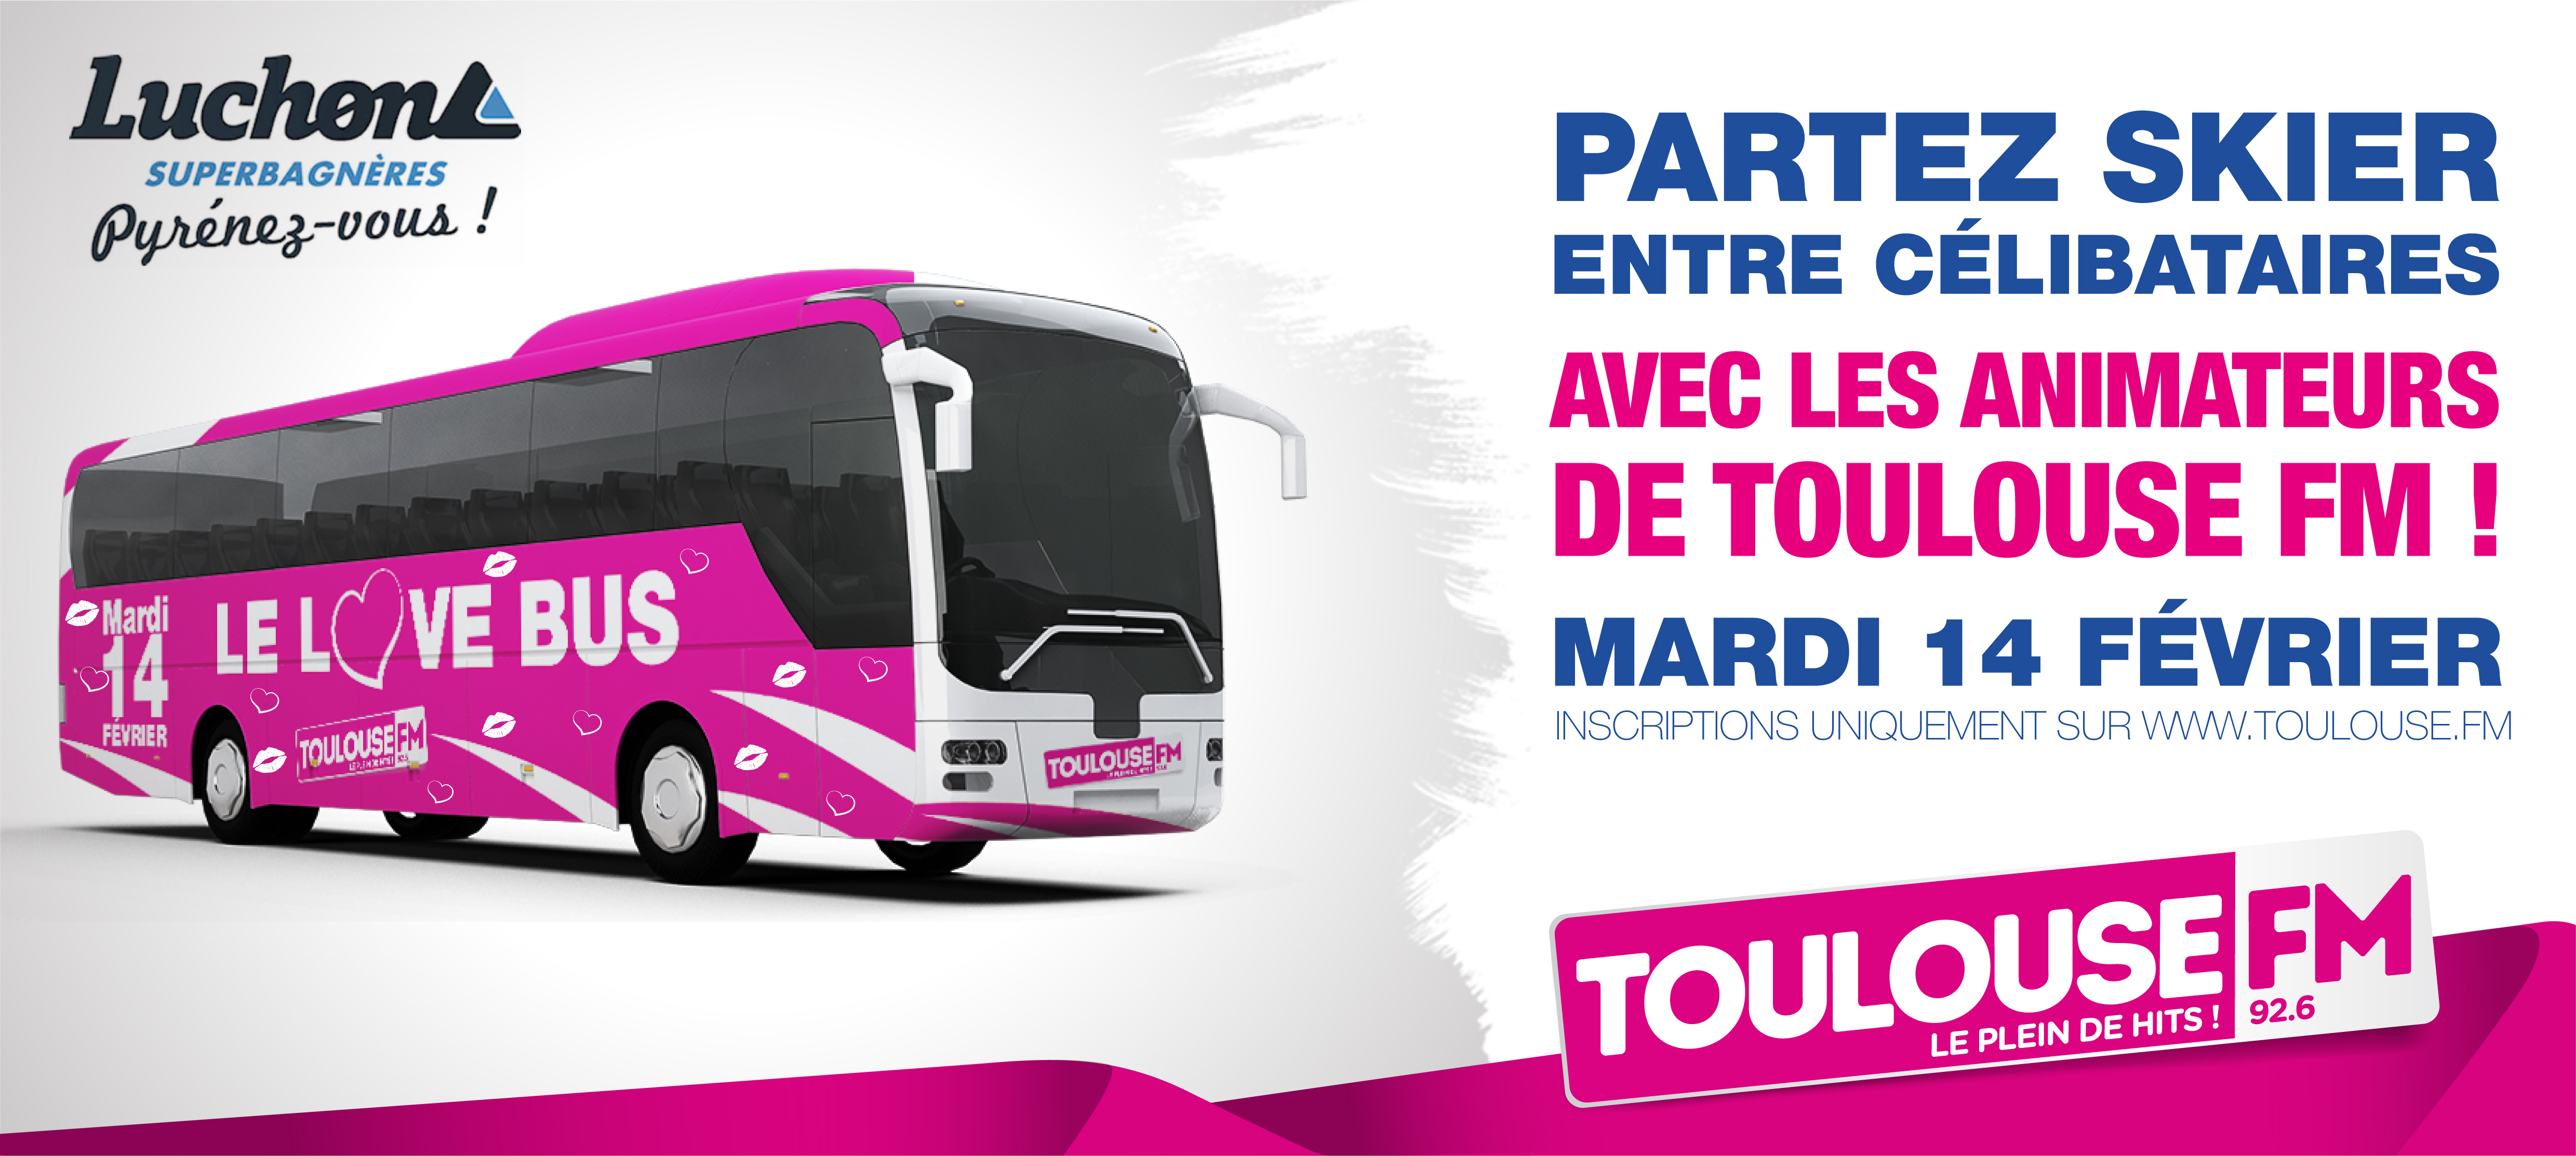 Toulouse FM propose à ses auditeurs de monter dans Le Love Bus